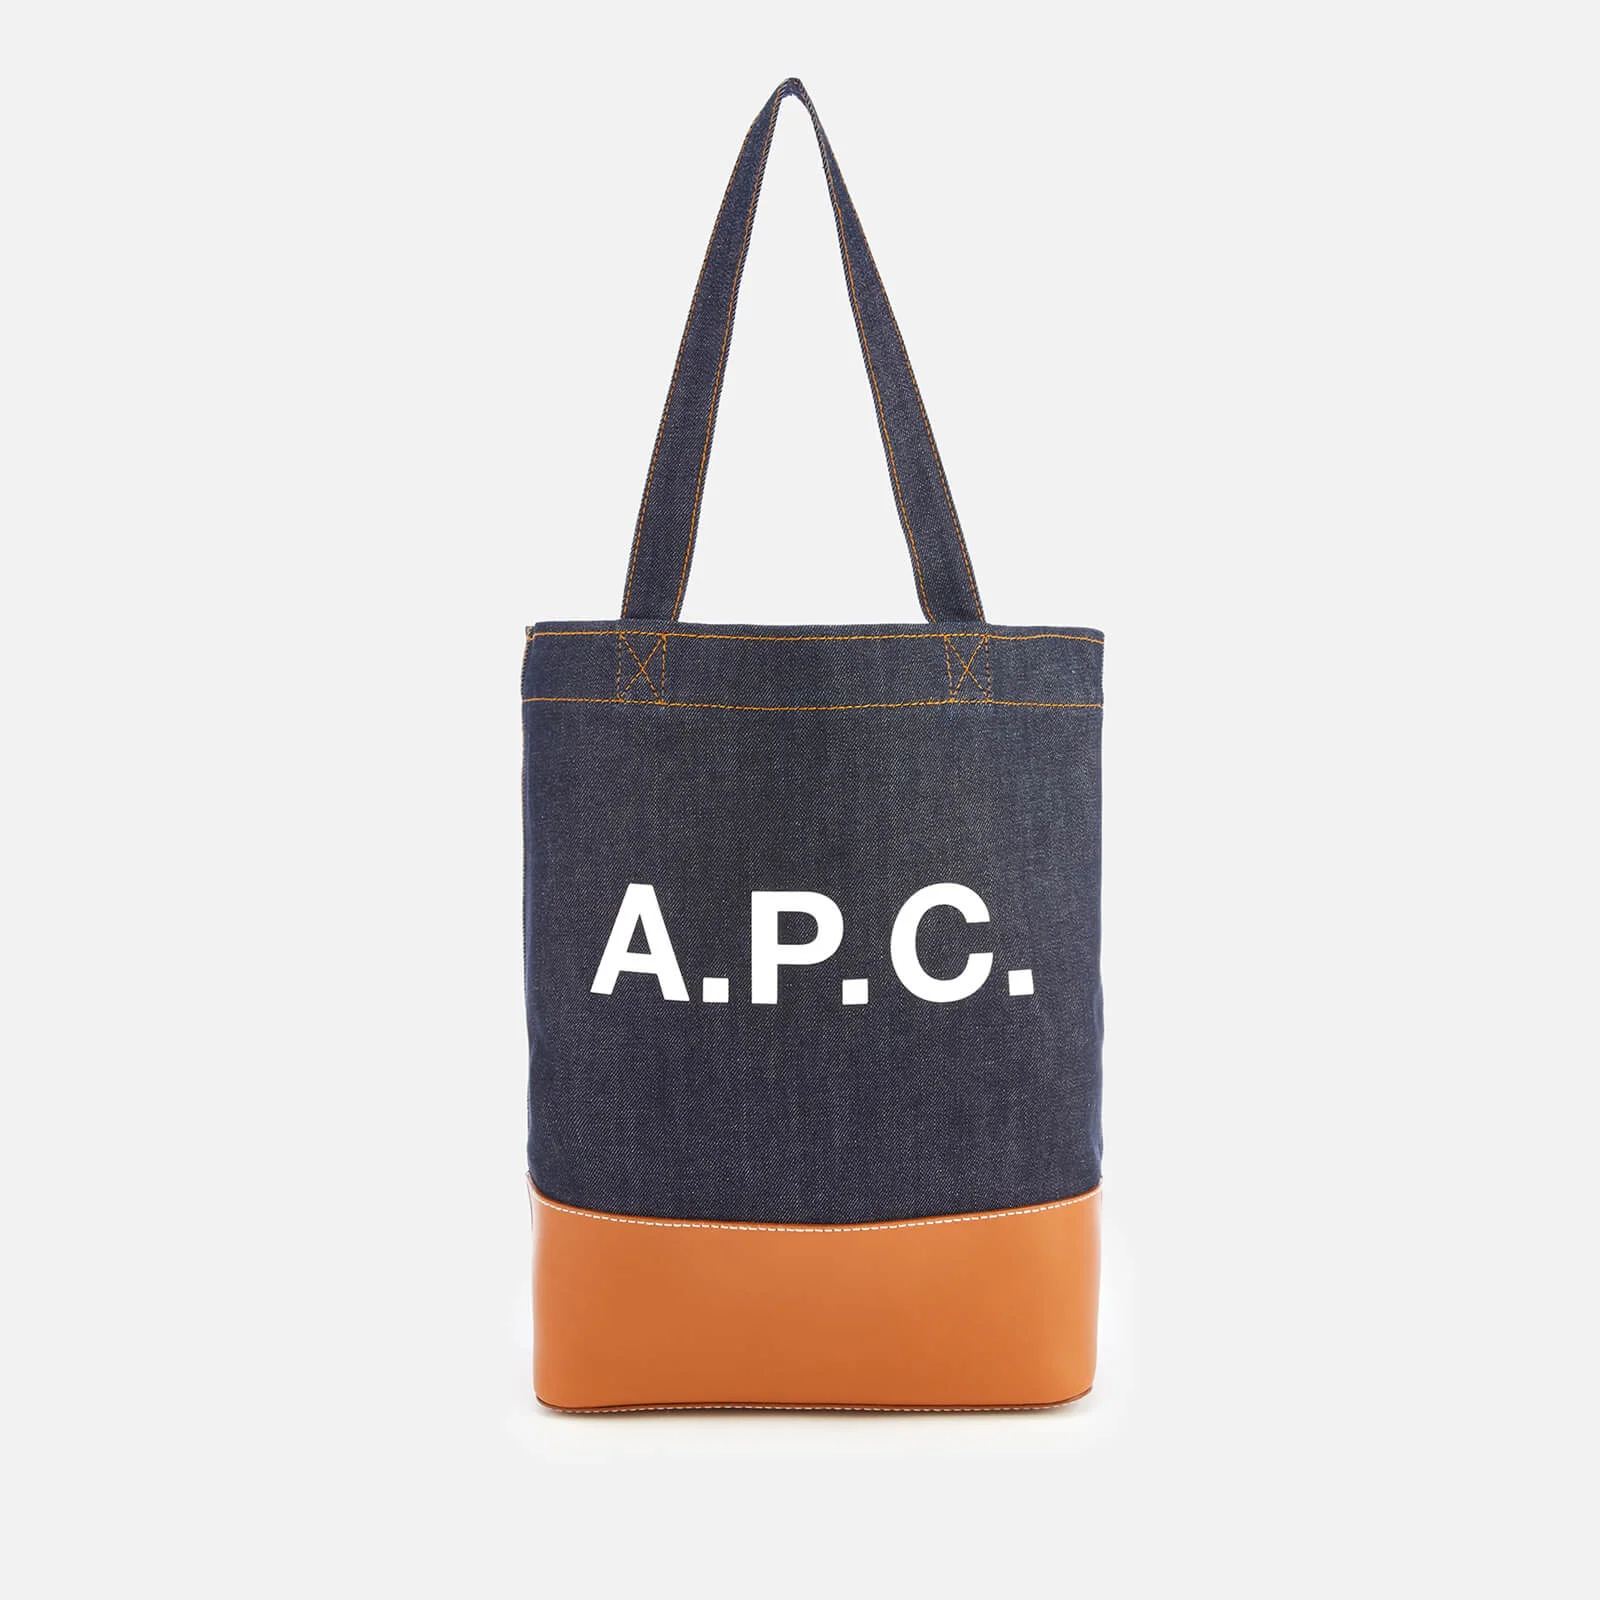 A.P.C. Women's Axelle Shopper Bag - Caramel Image 1